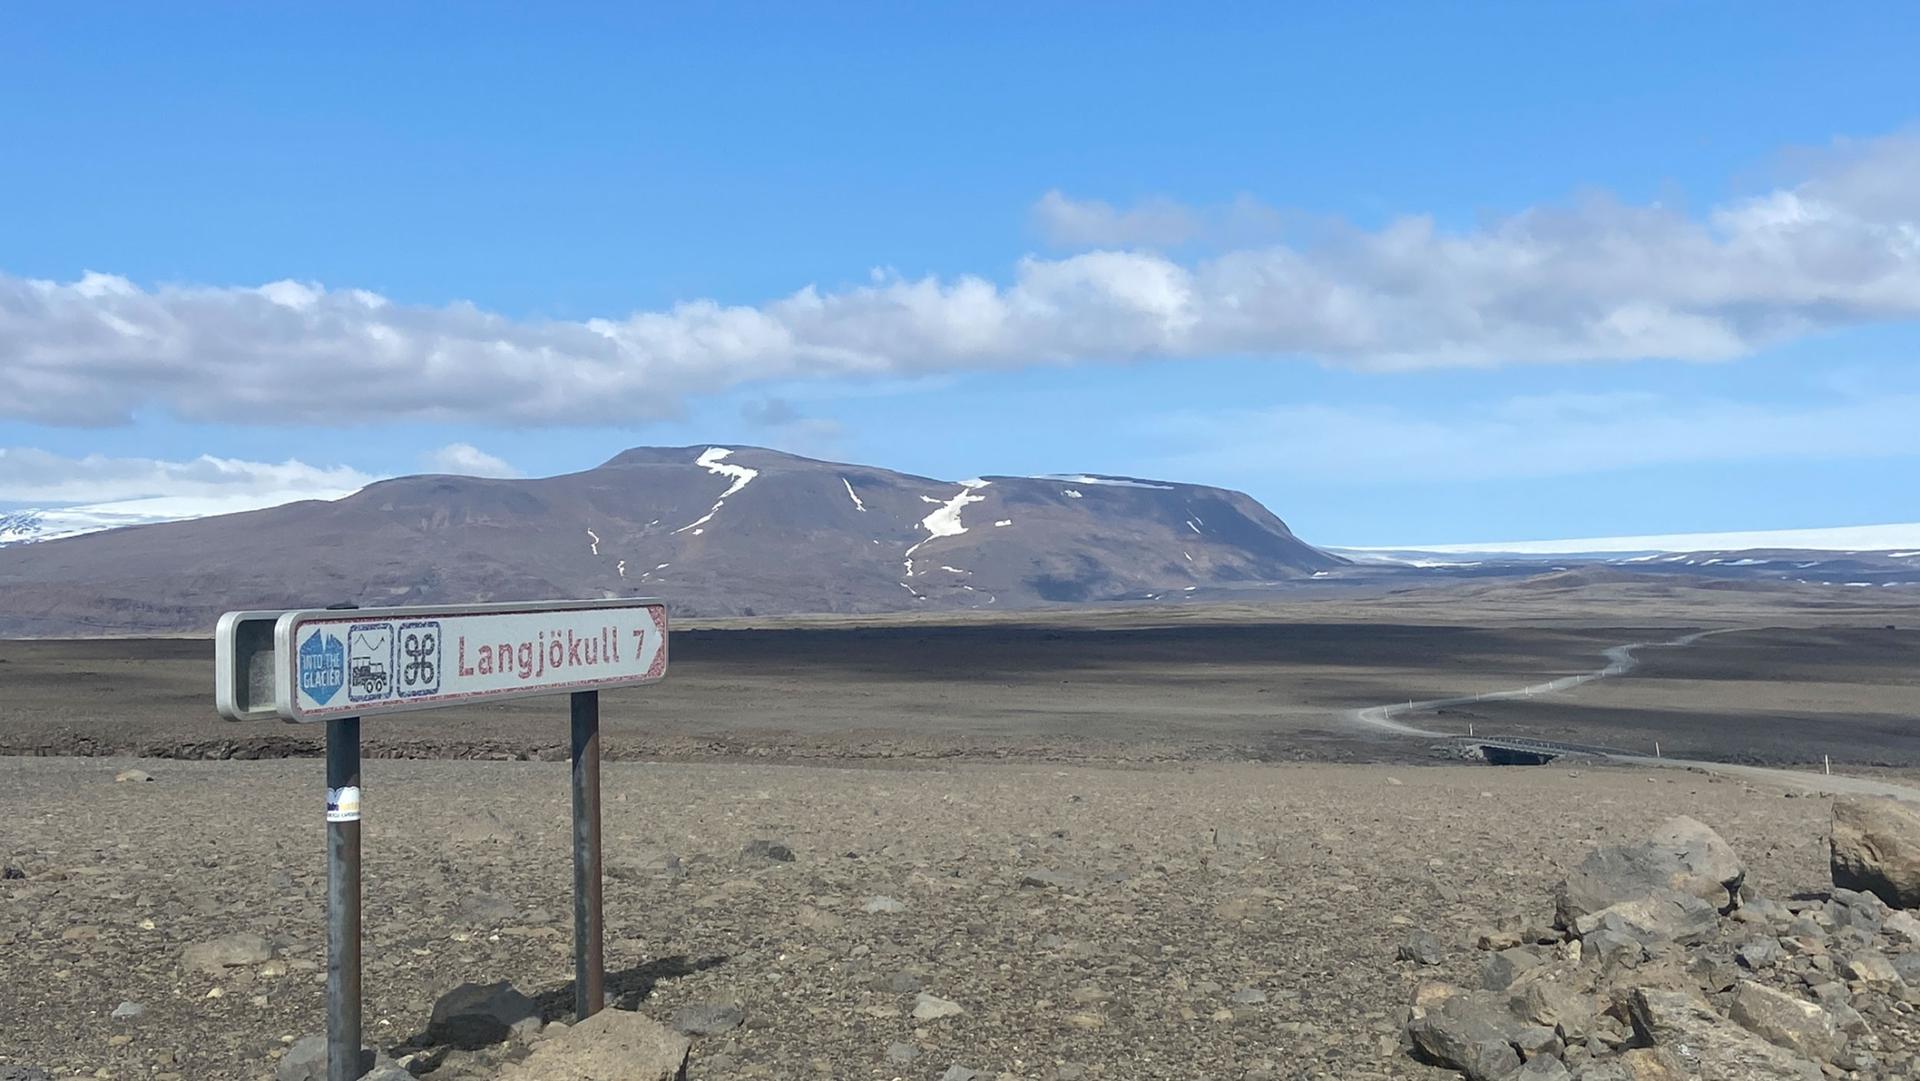 Langjökull looms like a white wave over Iceland’s volcanic landscape.